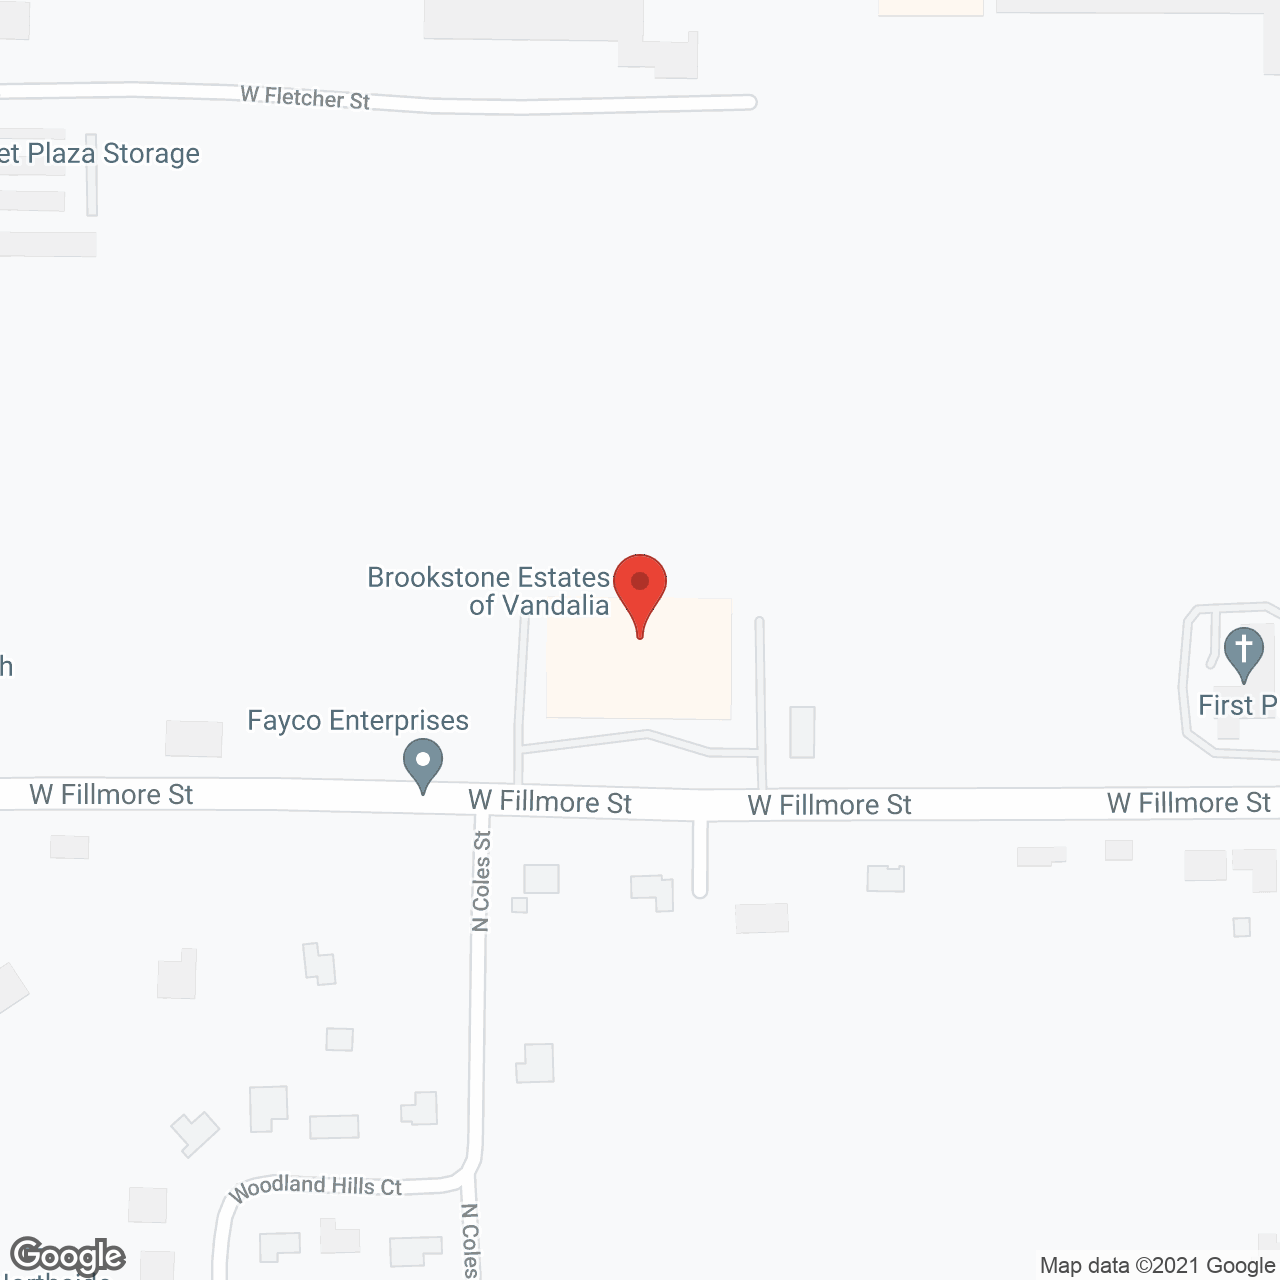 Brookstone Estates of Vandalia in google map